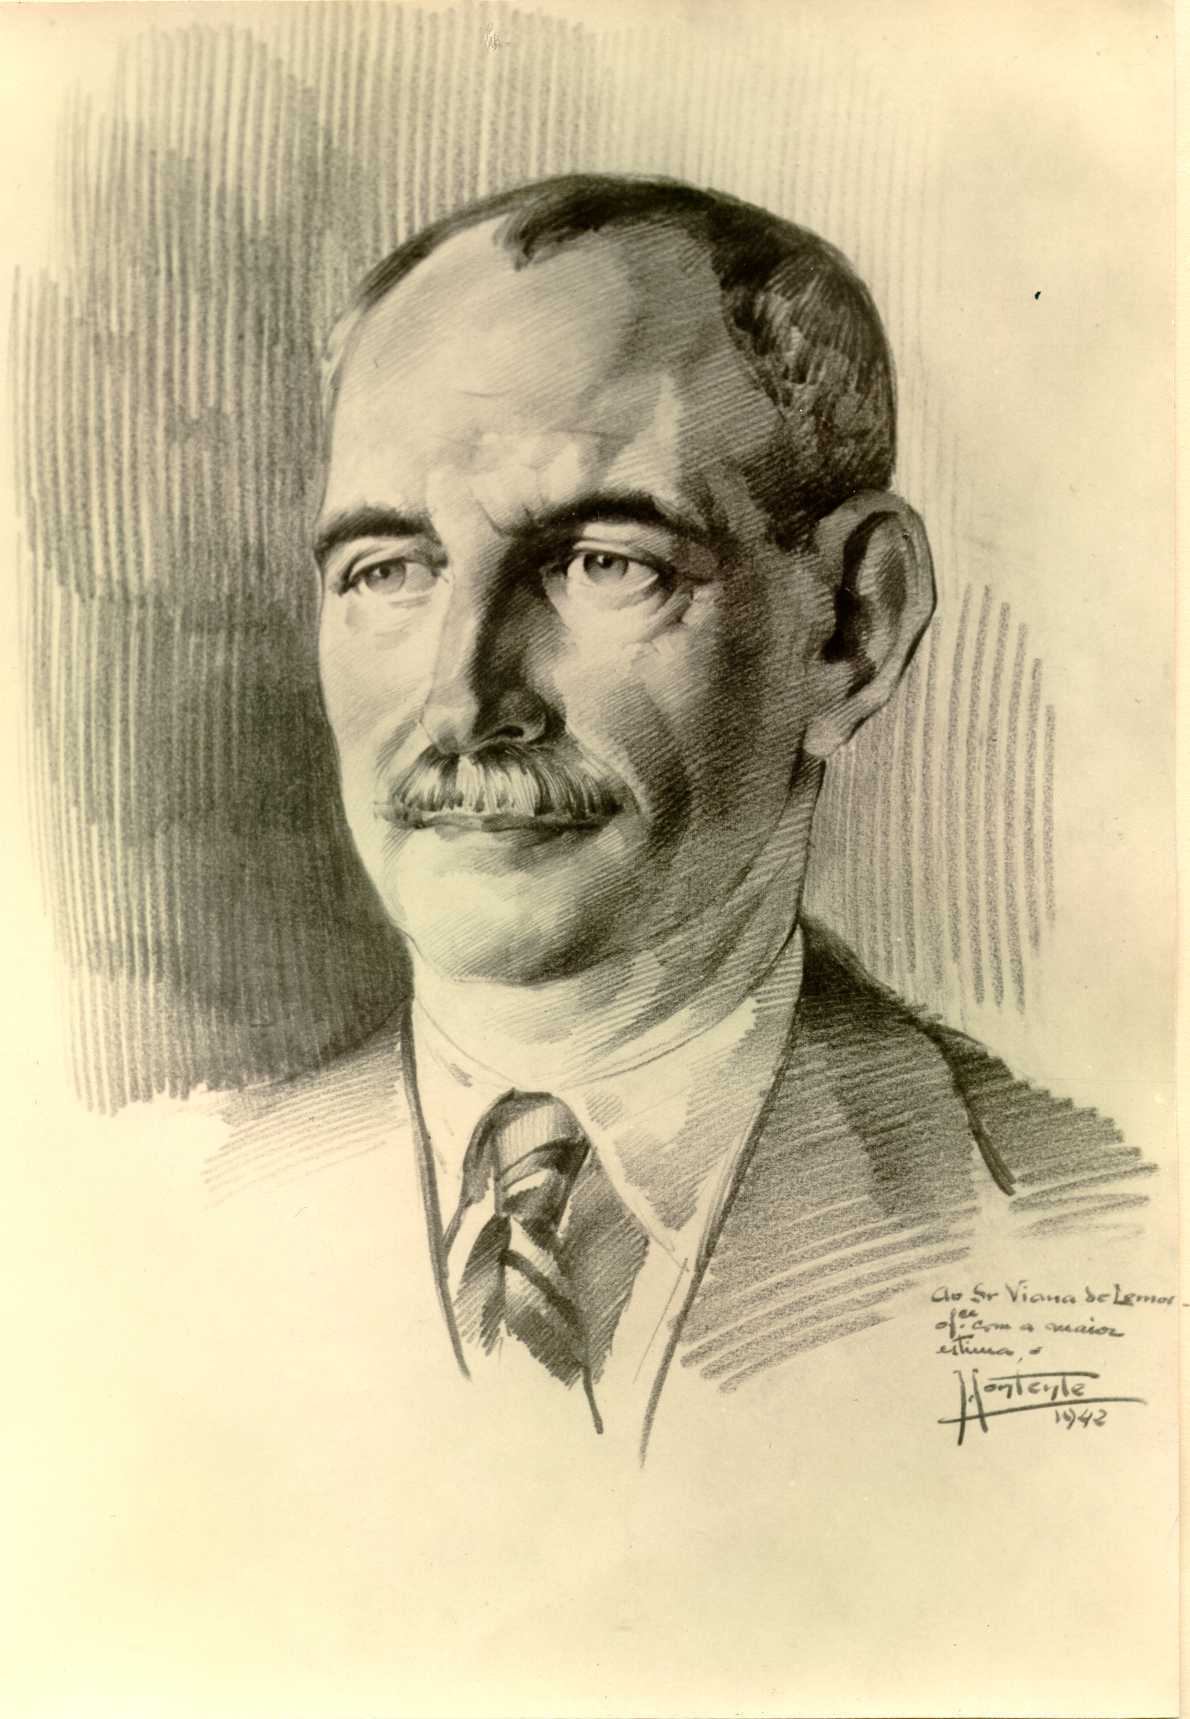 Capitão Álvaro Viana de Lemos, Comandante do Depósito de Concentrados Alemães 1916